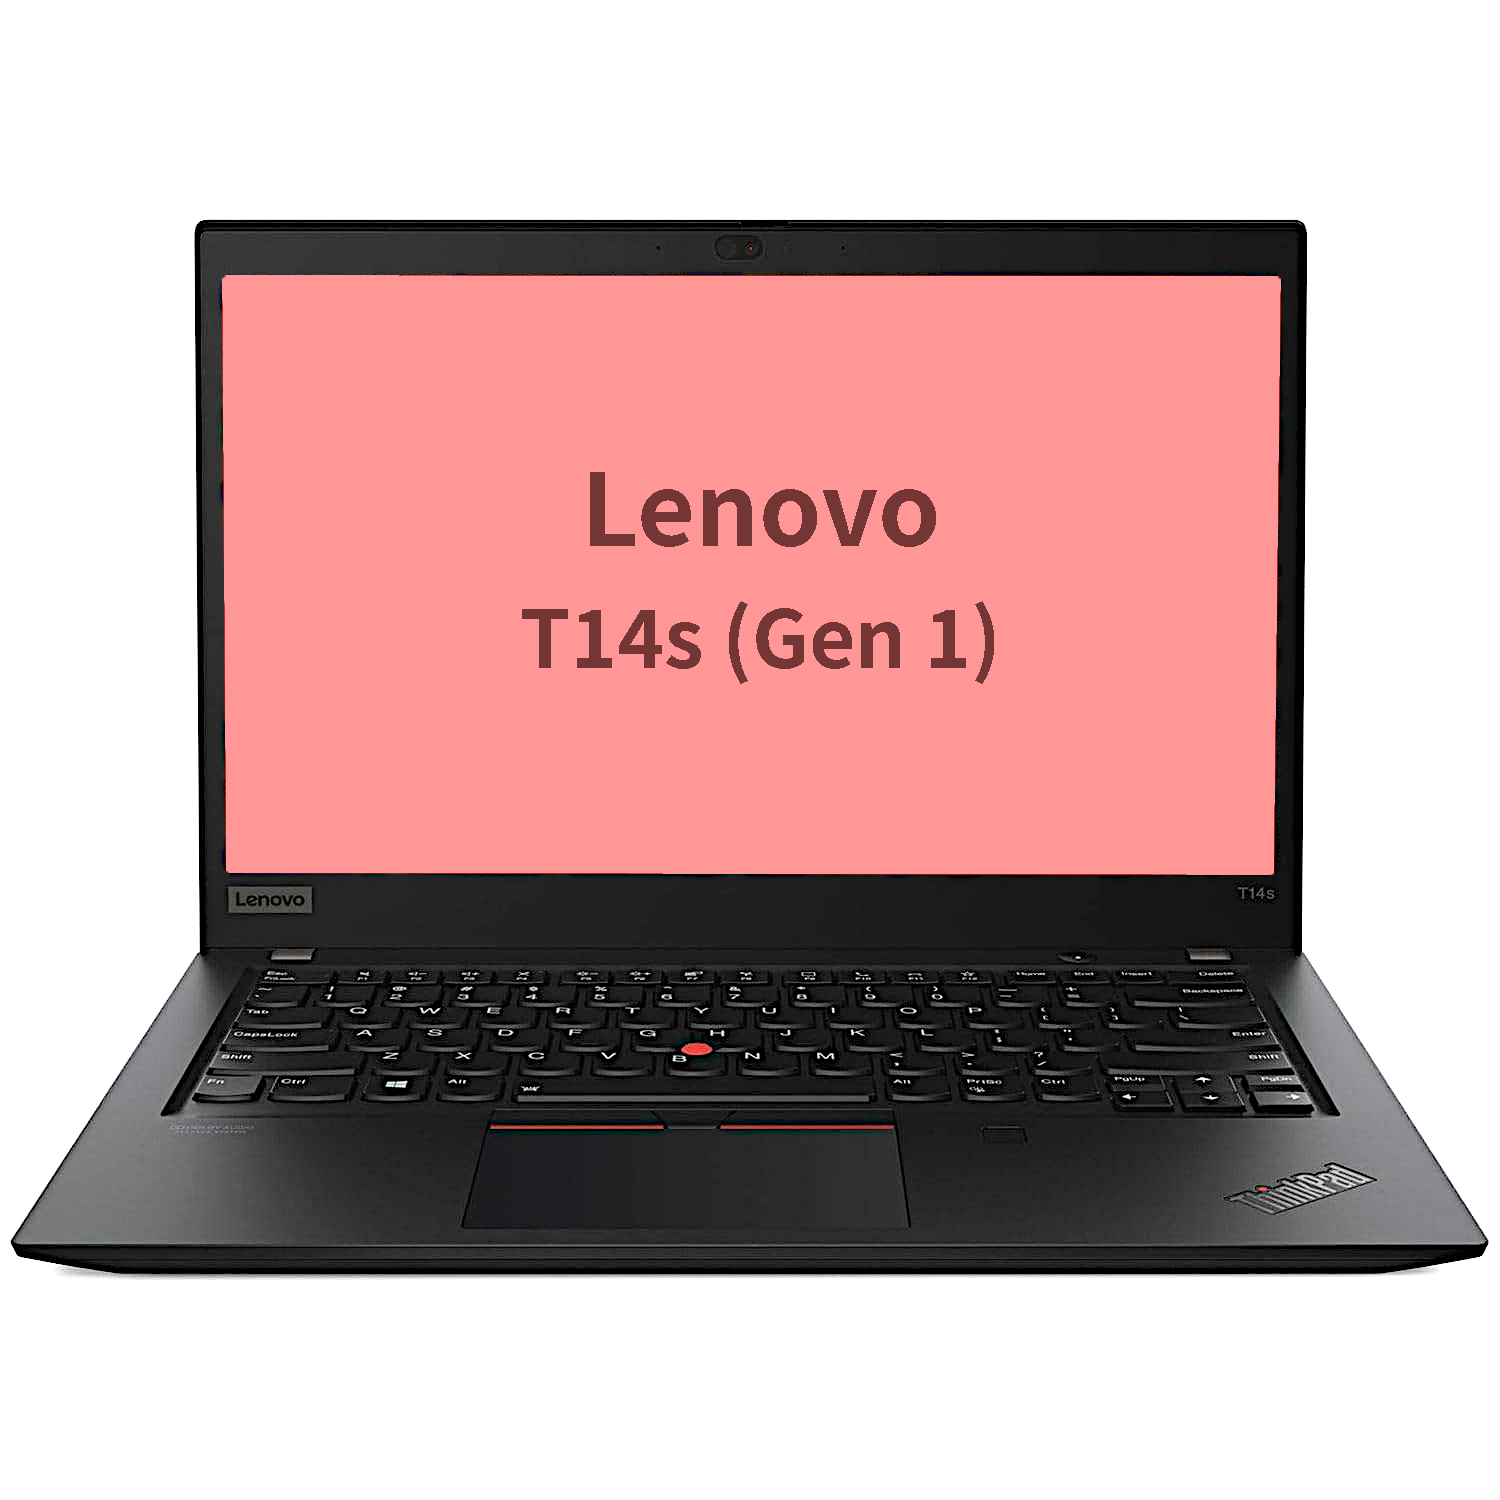 Lenovo T14s Gen 1